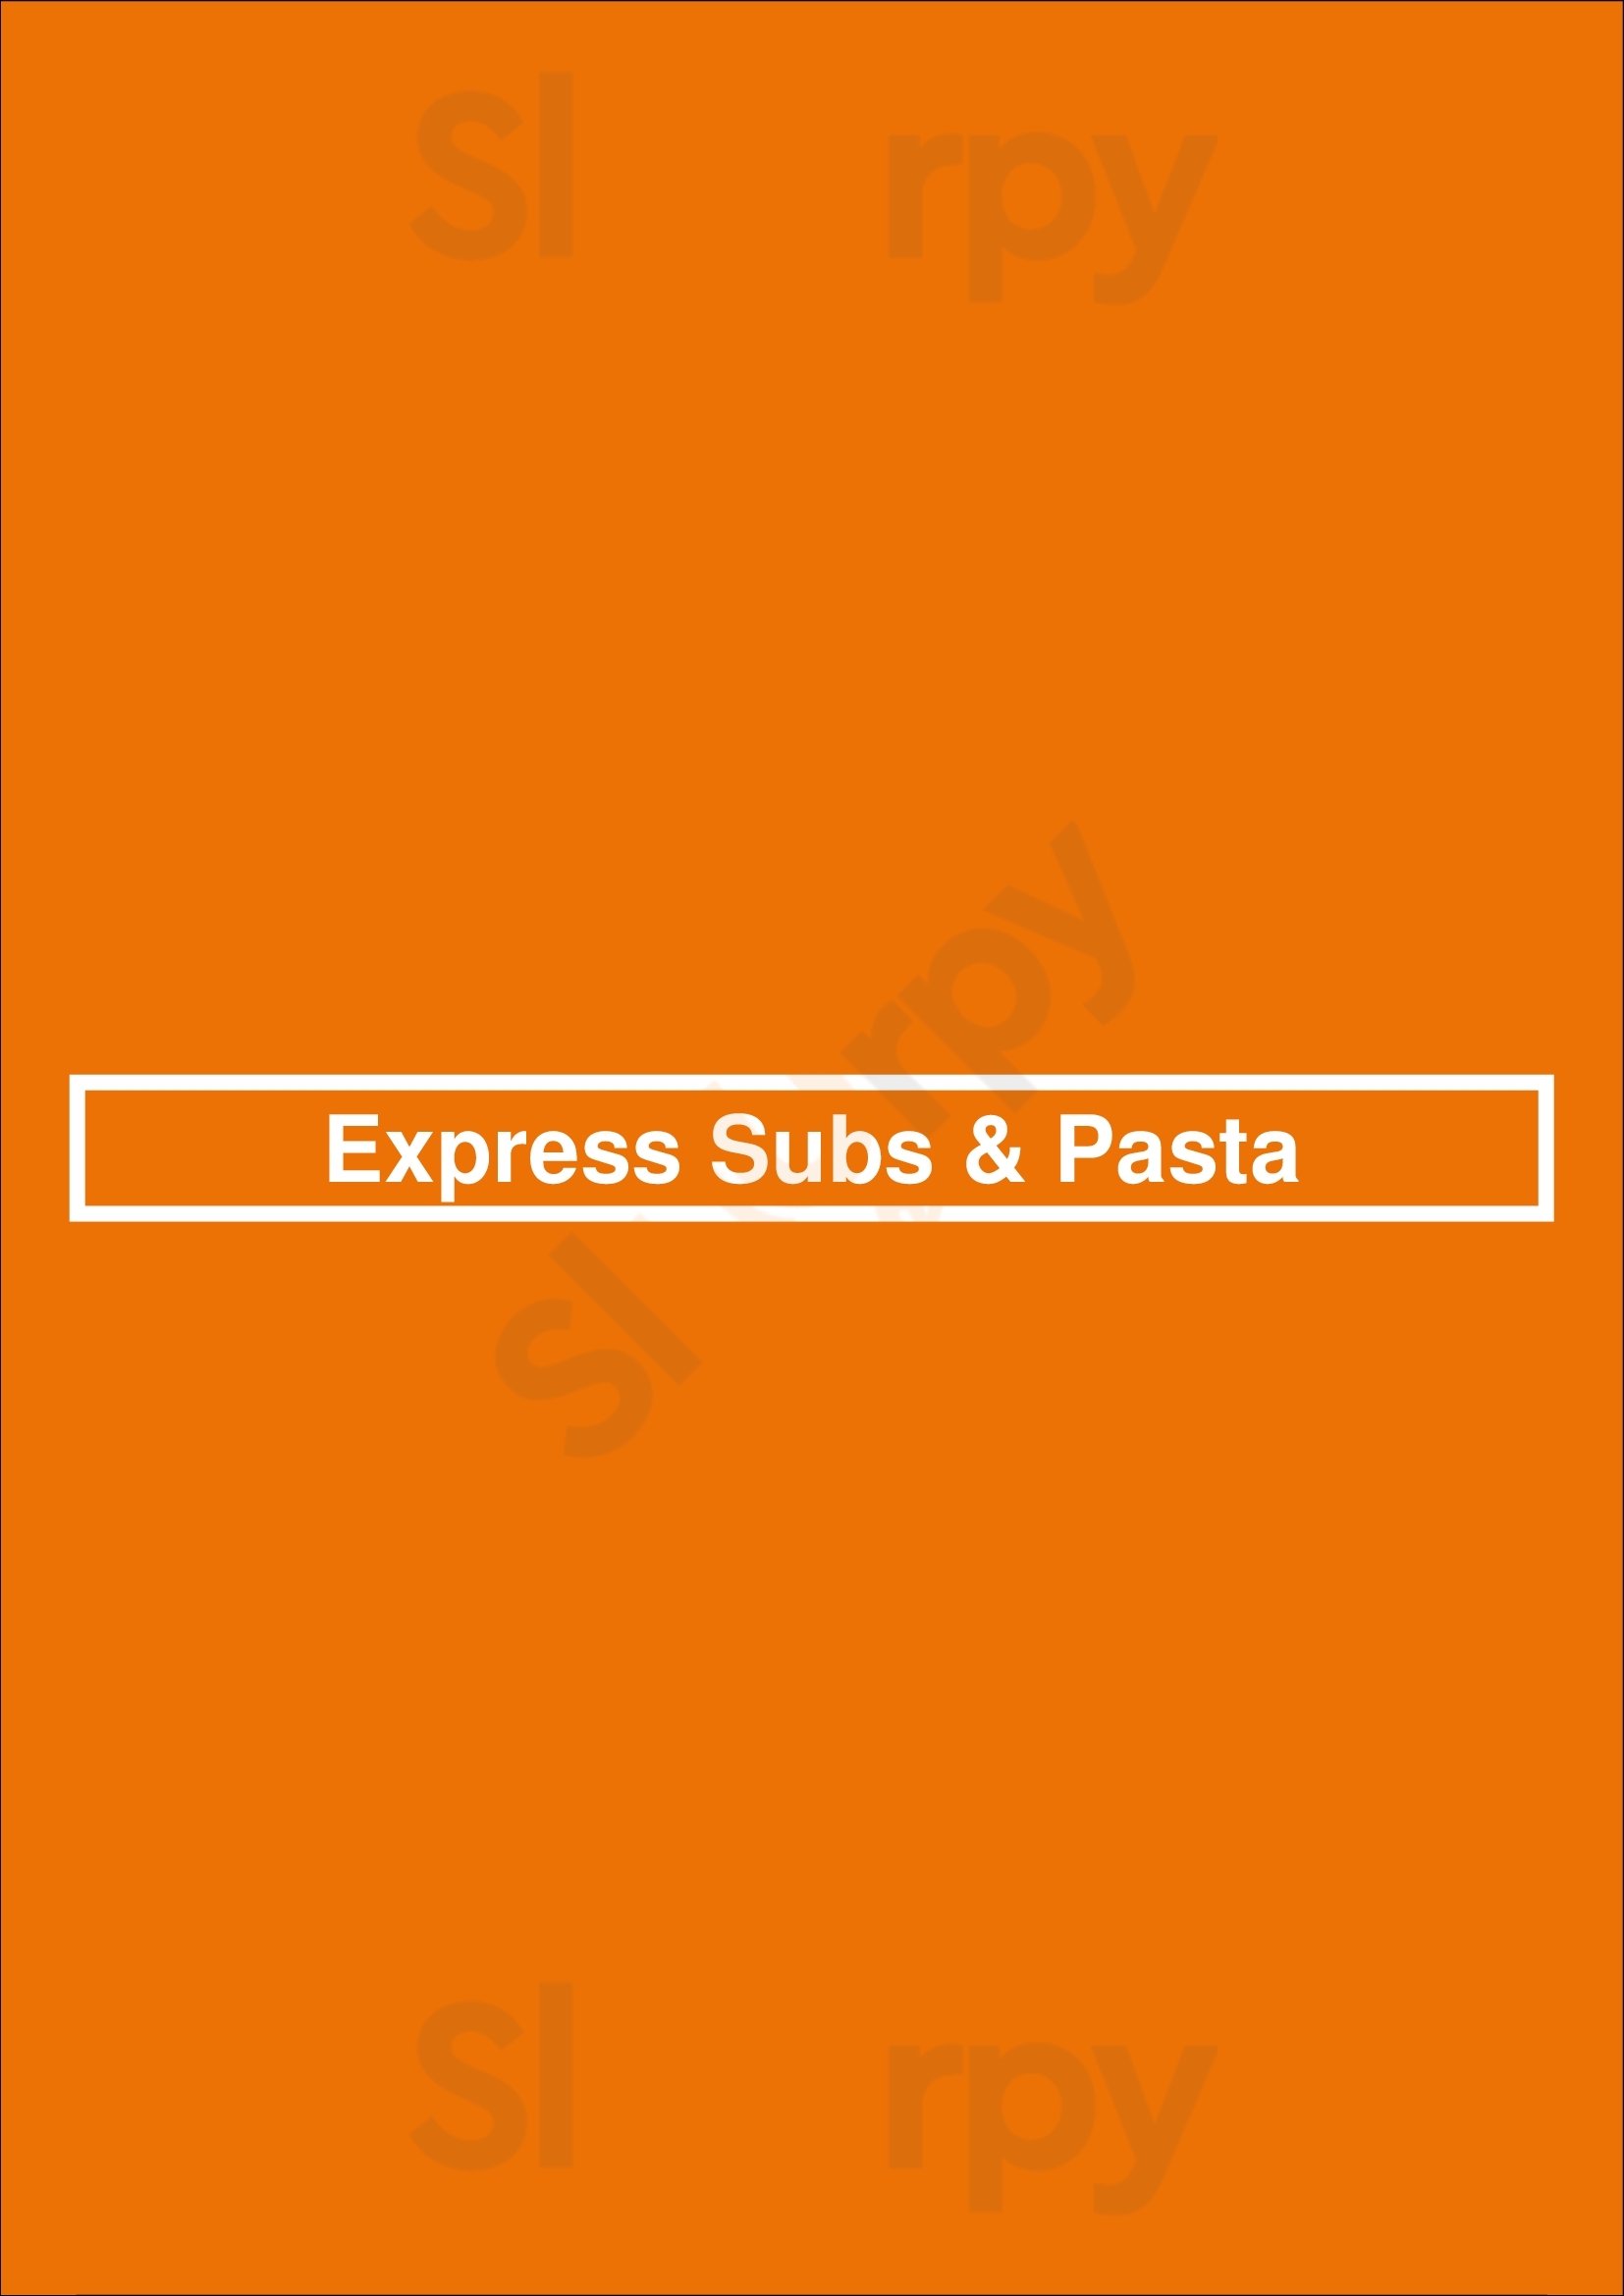 Express Subs & Pasta Miami Menu - 1